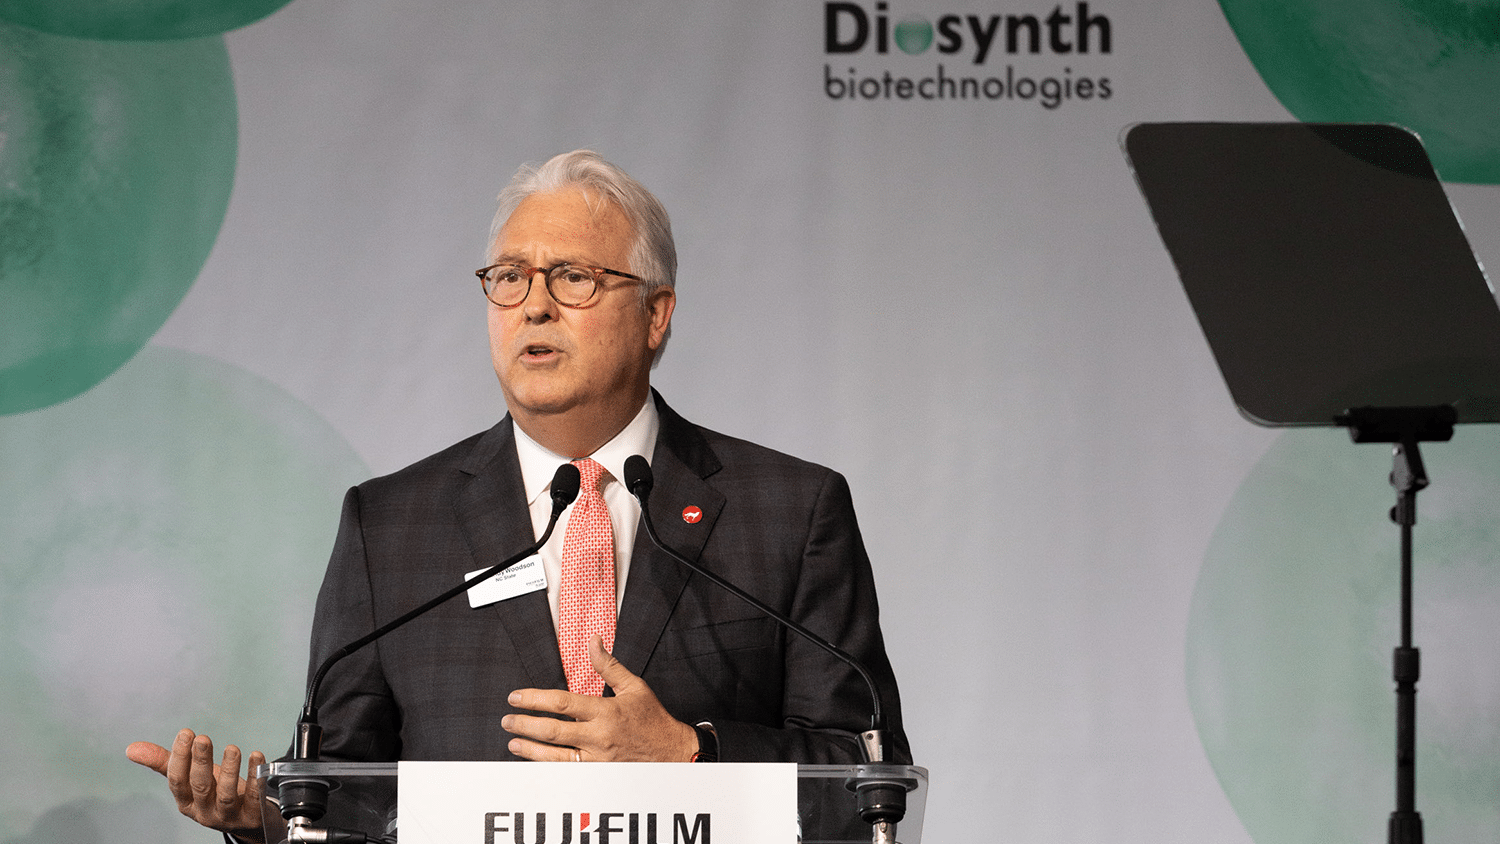 兰迪·伍德森总理在FUJIFIM Diosynth活动上发言